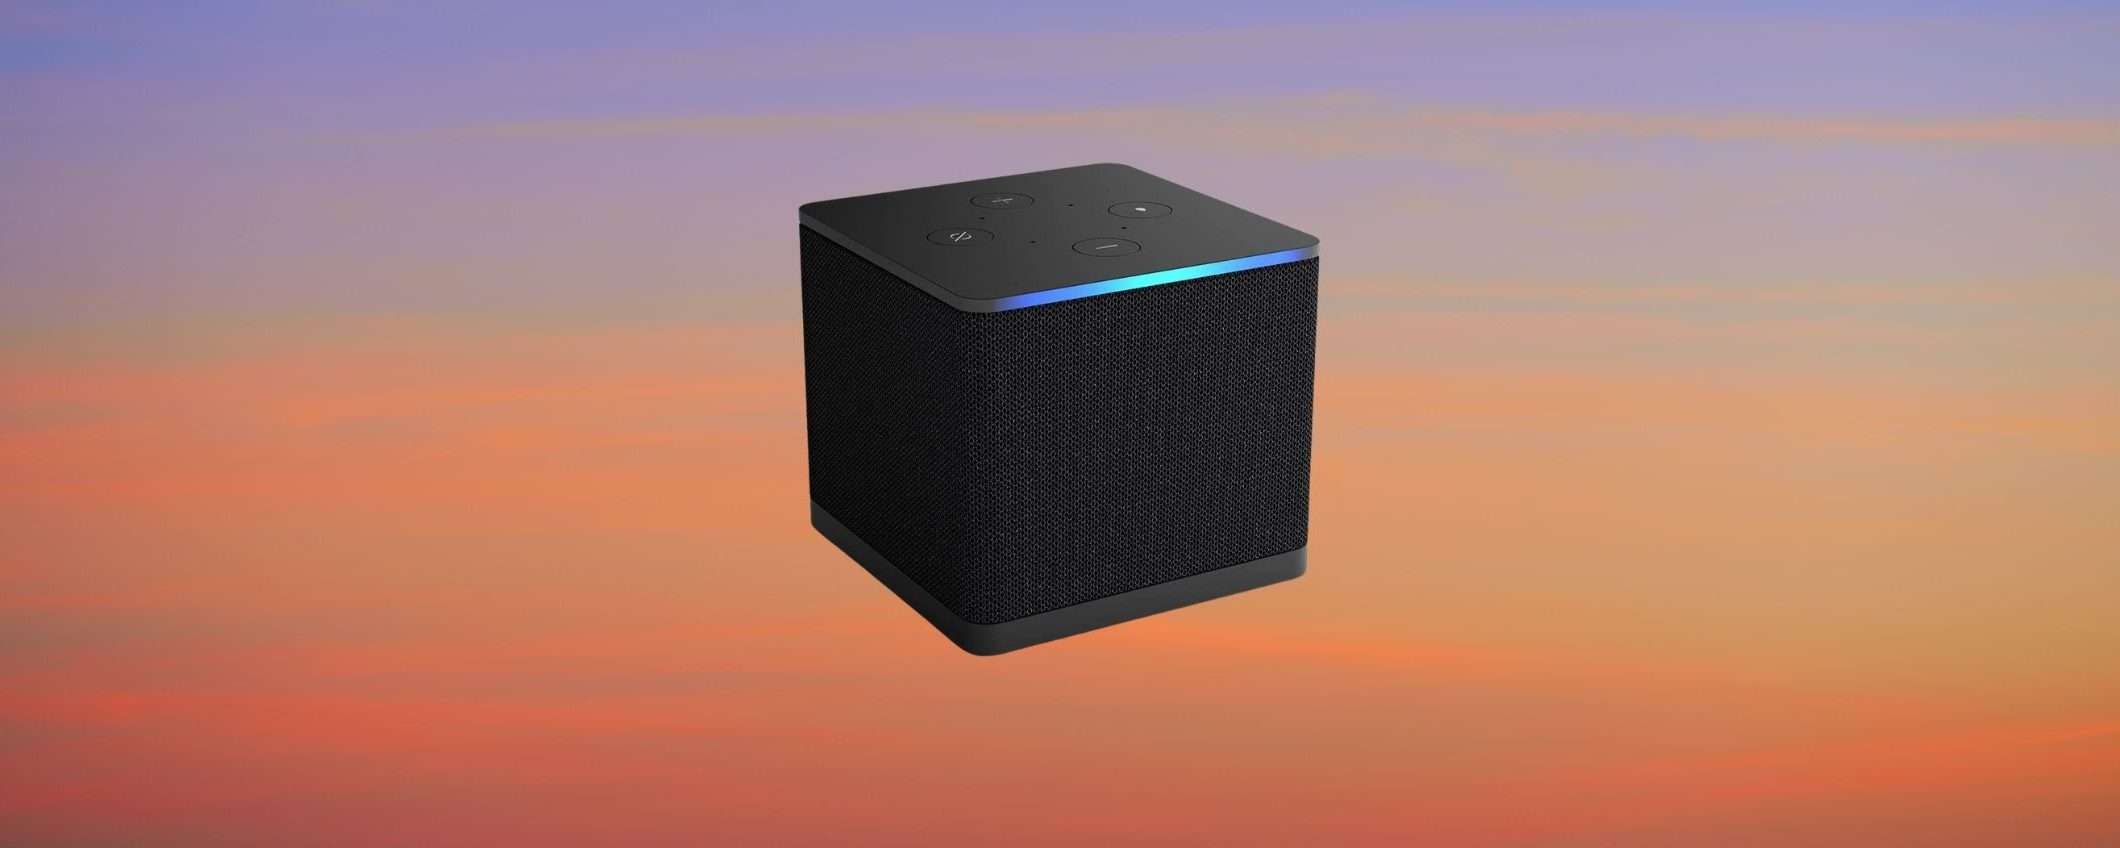 Fire TV Cube: prodotto Premium in grande sconto su Amazon